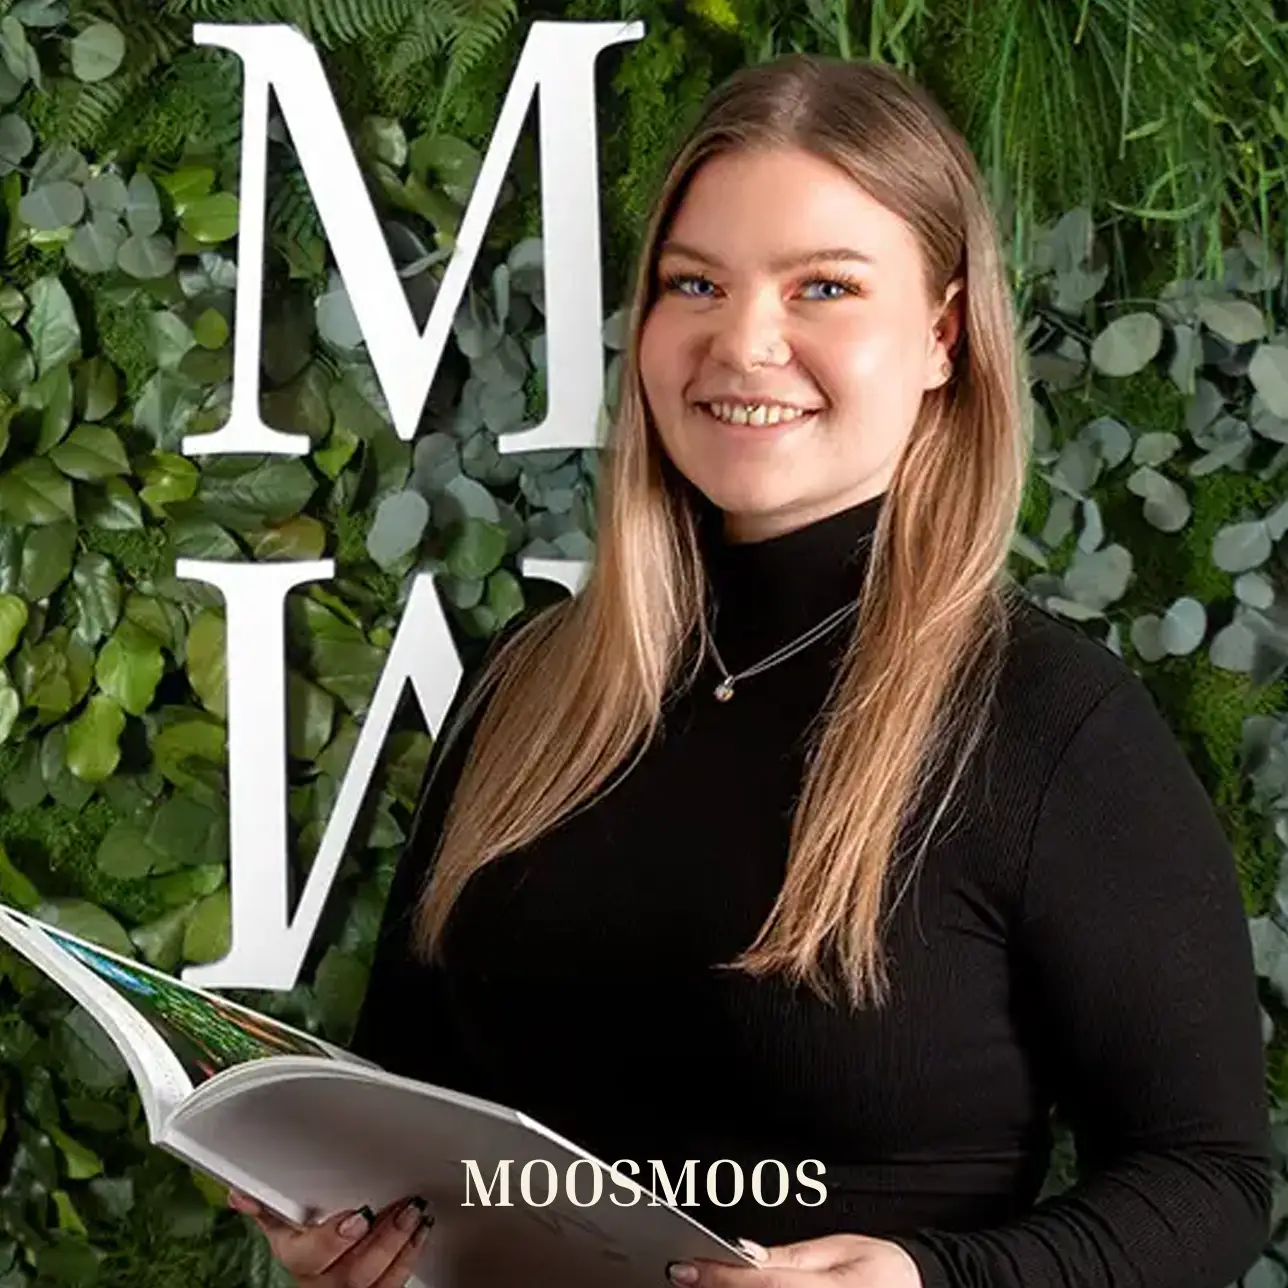 MOOSMOOS Vetrieb & Kundendienst für persönliche Beratung kunden für Mooswände, Moosdecken & Moosbilder & Außenfassadenbegrünung Laura Schulze